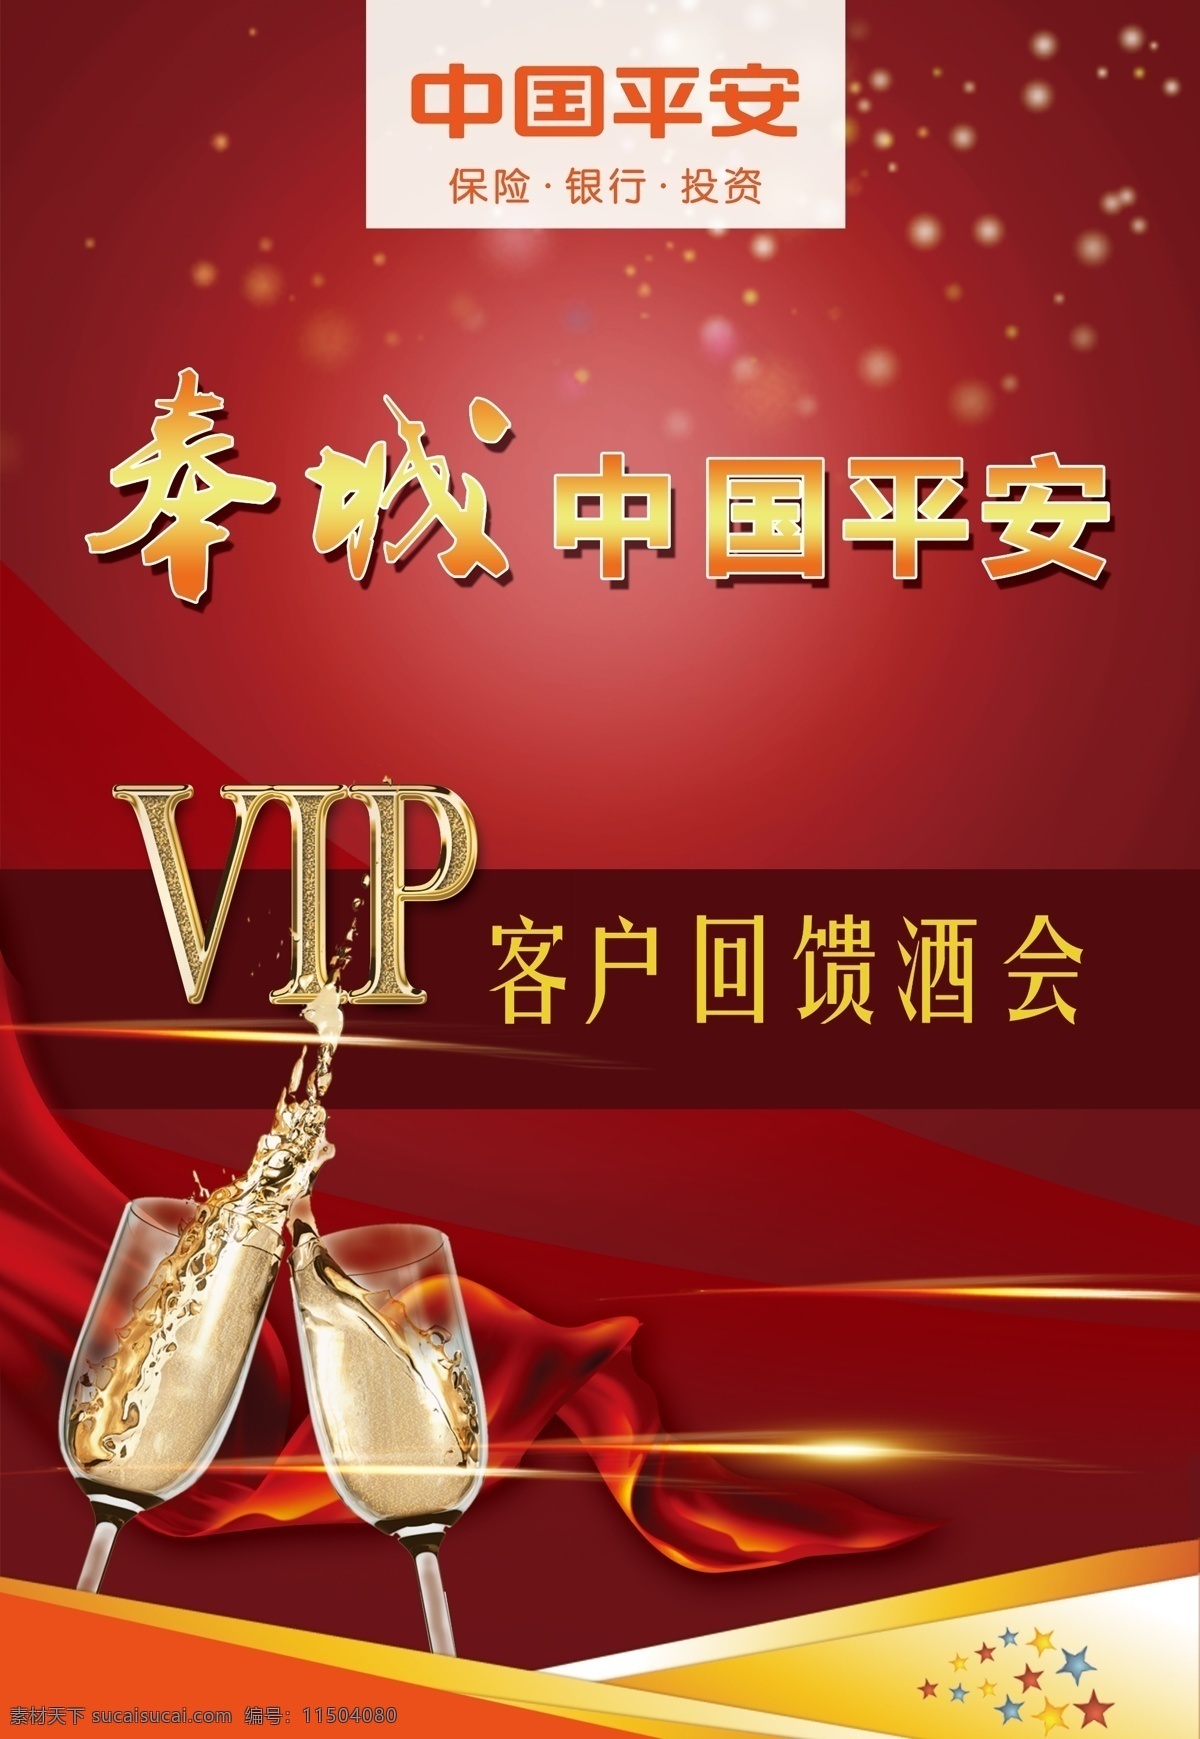 回馈 酒会 vip 绸缎 红色 酒杯 客户 中国平安 原创设计 原创海报